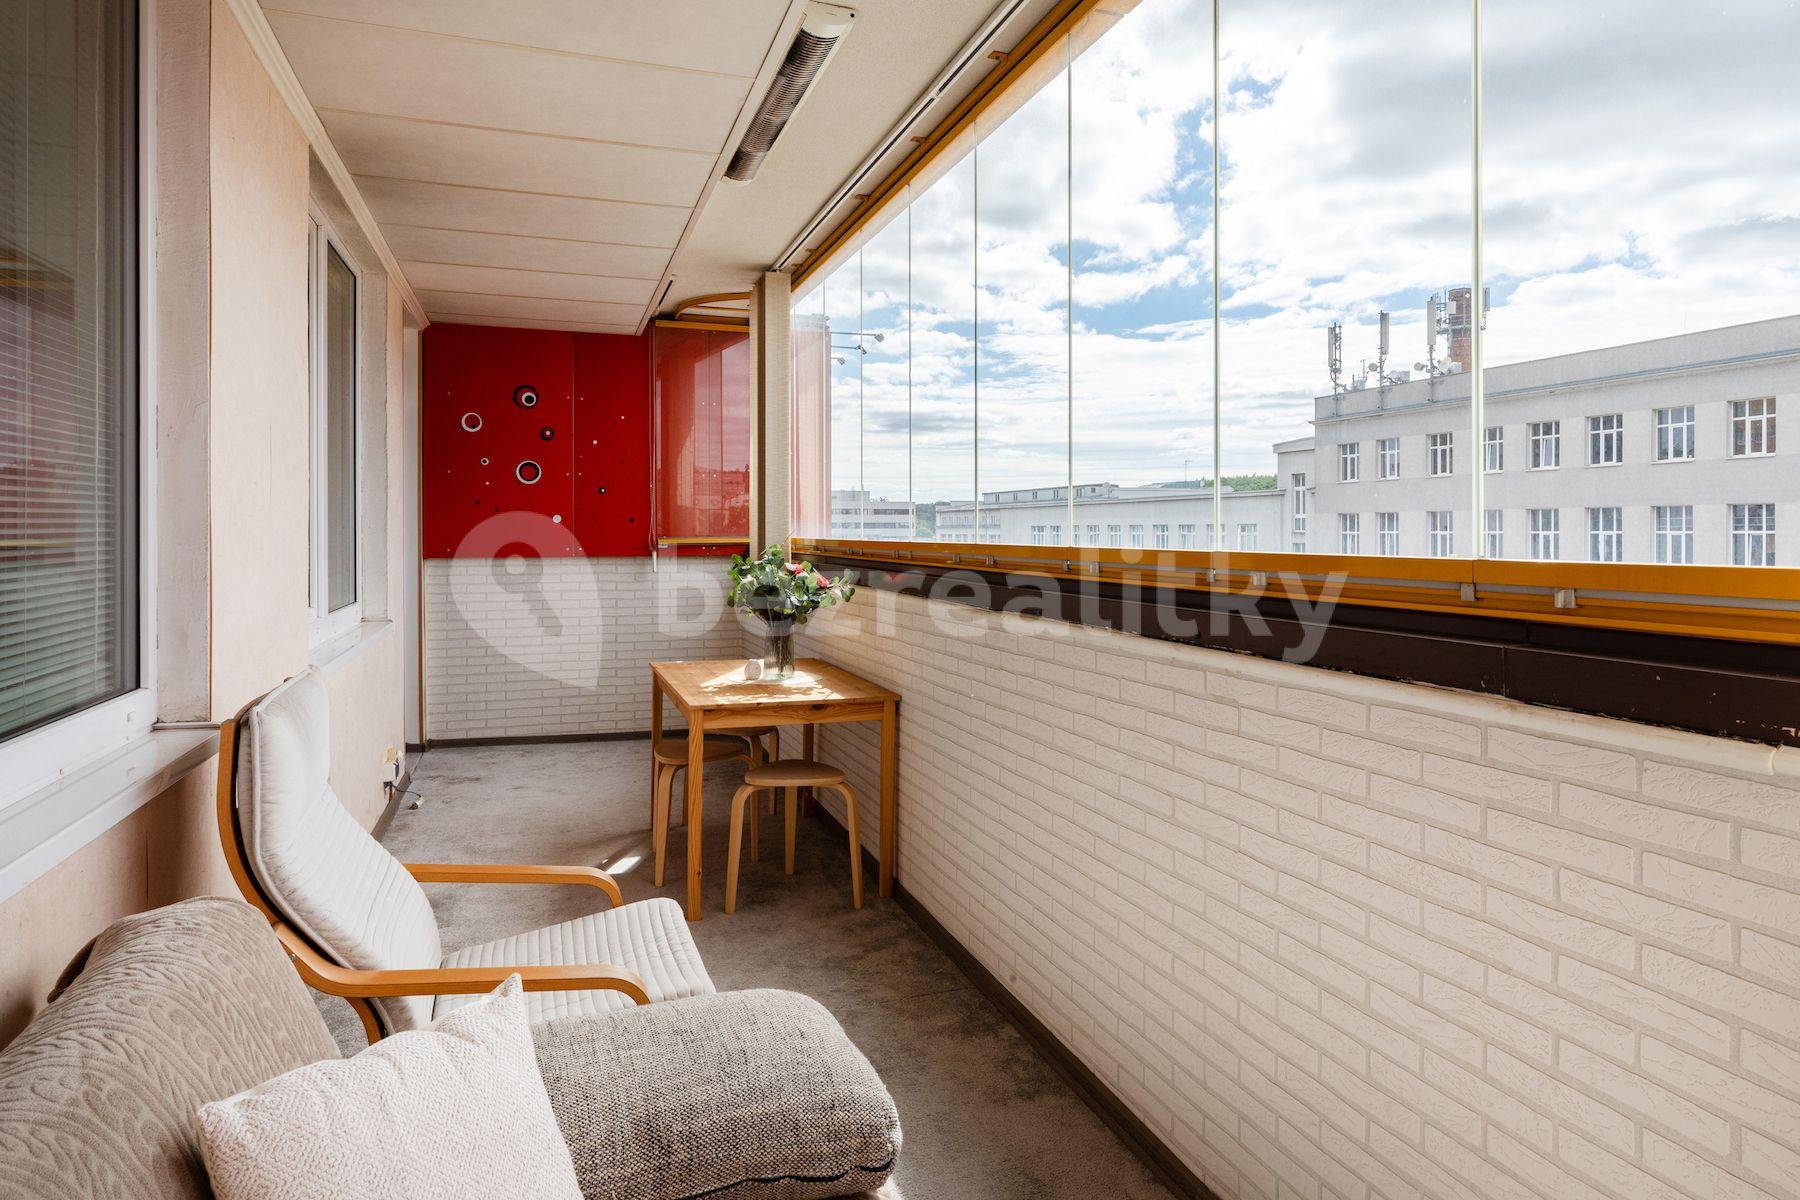 1 bedroom with open-plan kitchen flat for sale, 50 m², Poděbradská, Prague, Prague